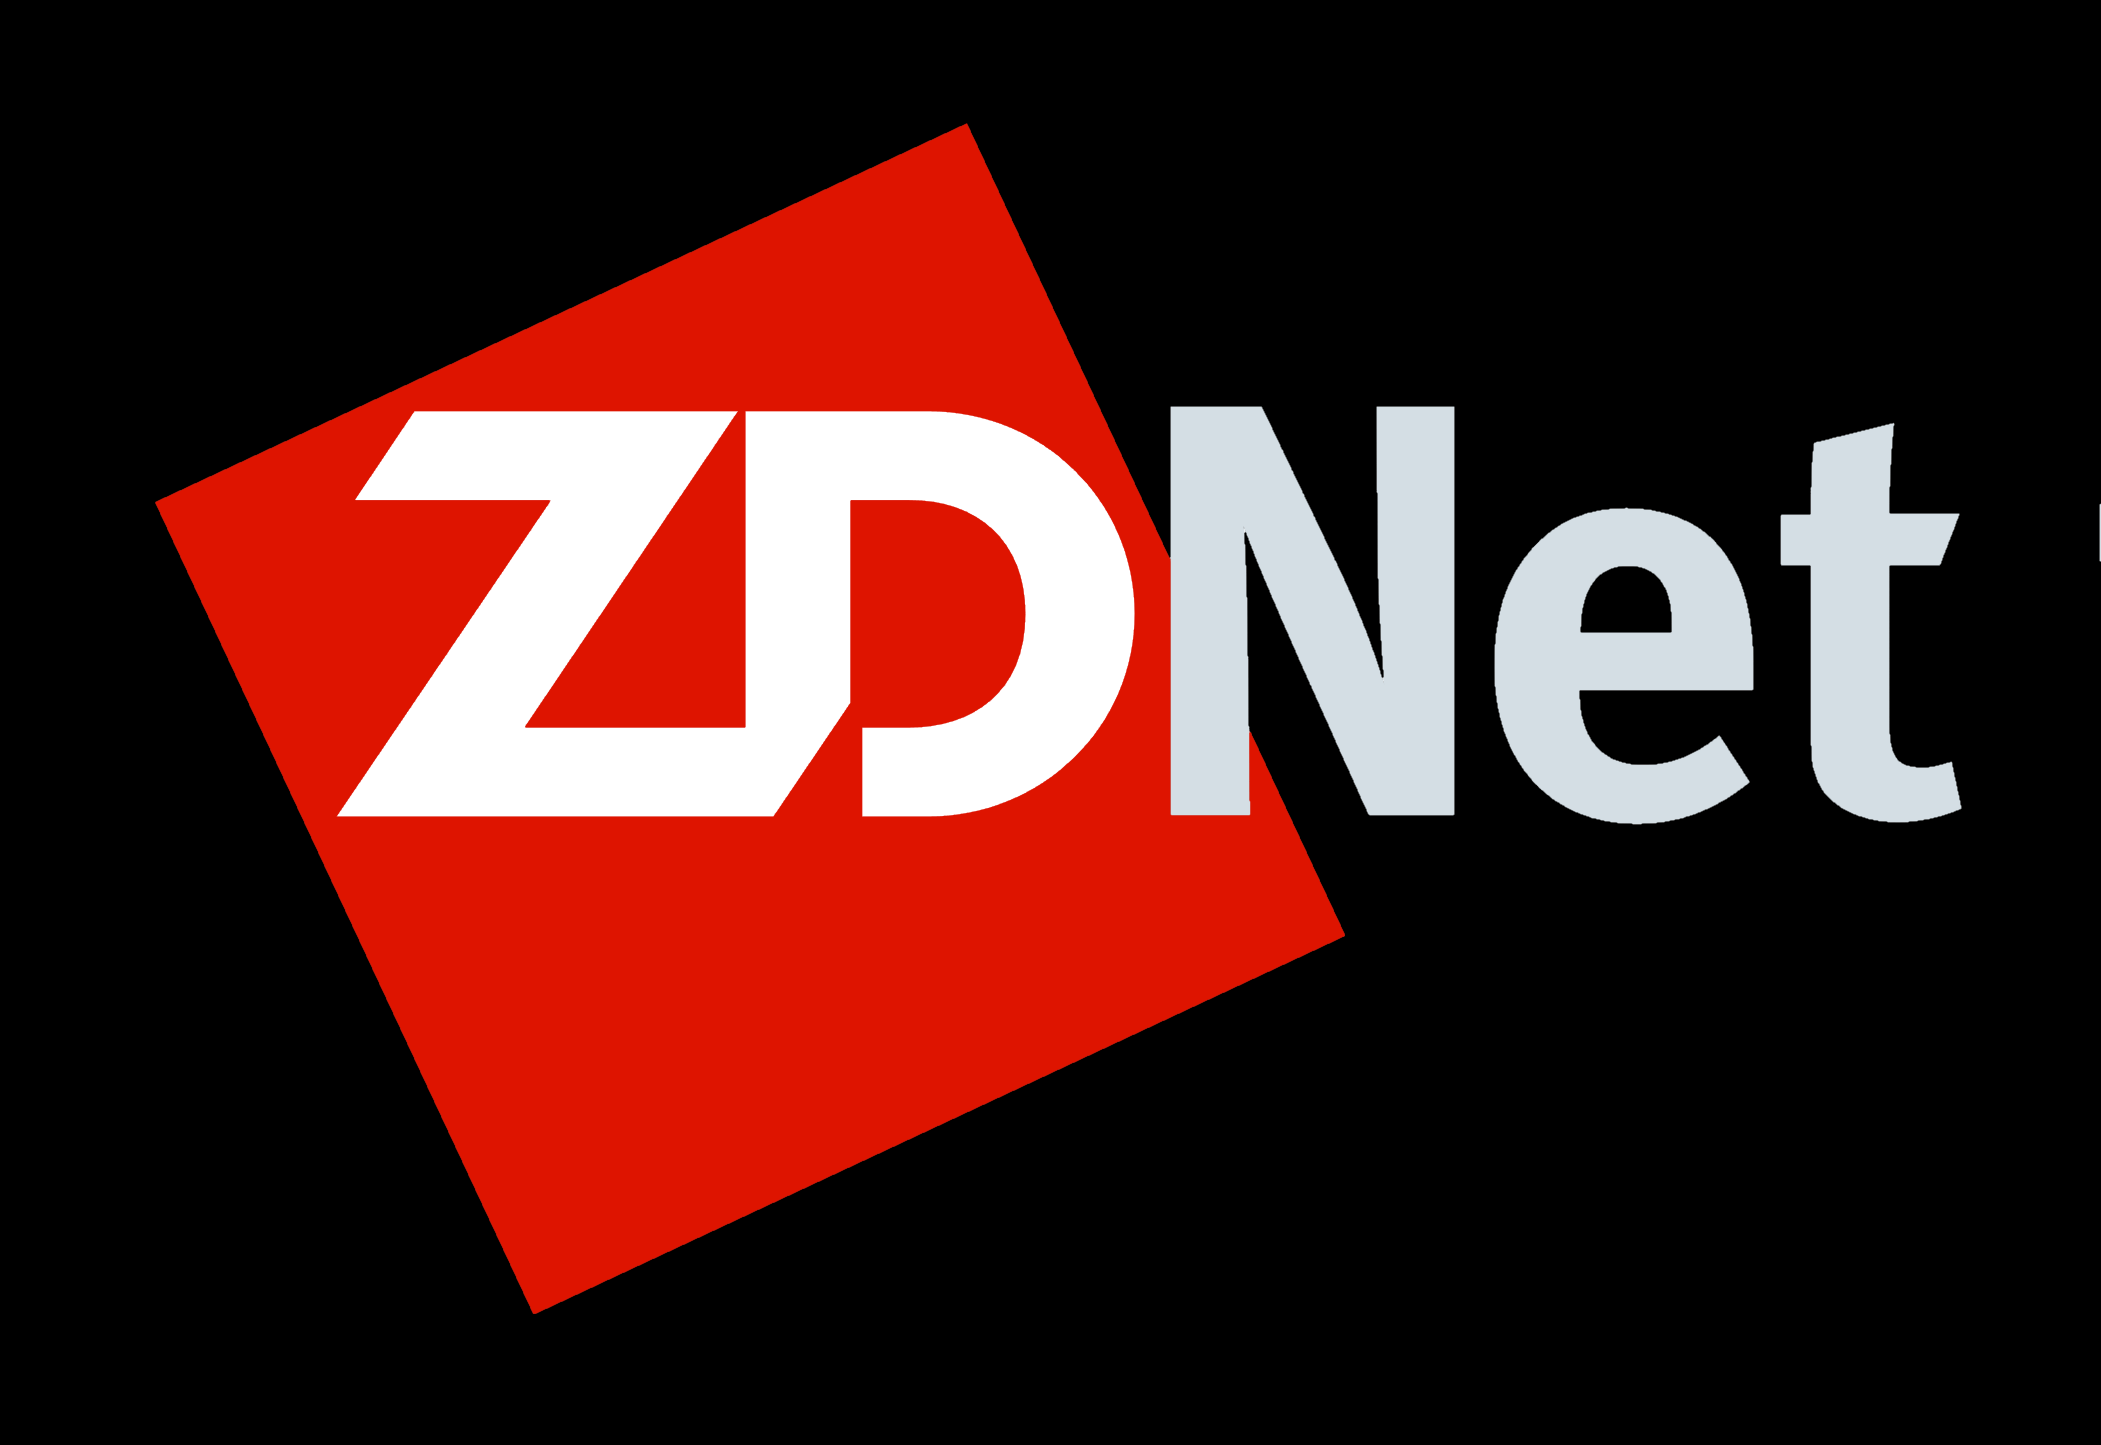 ZDNet Logo - ZDNet – Logos Download